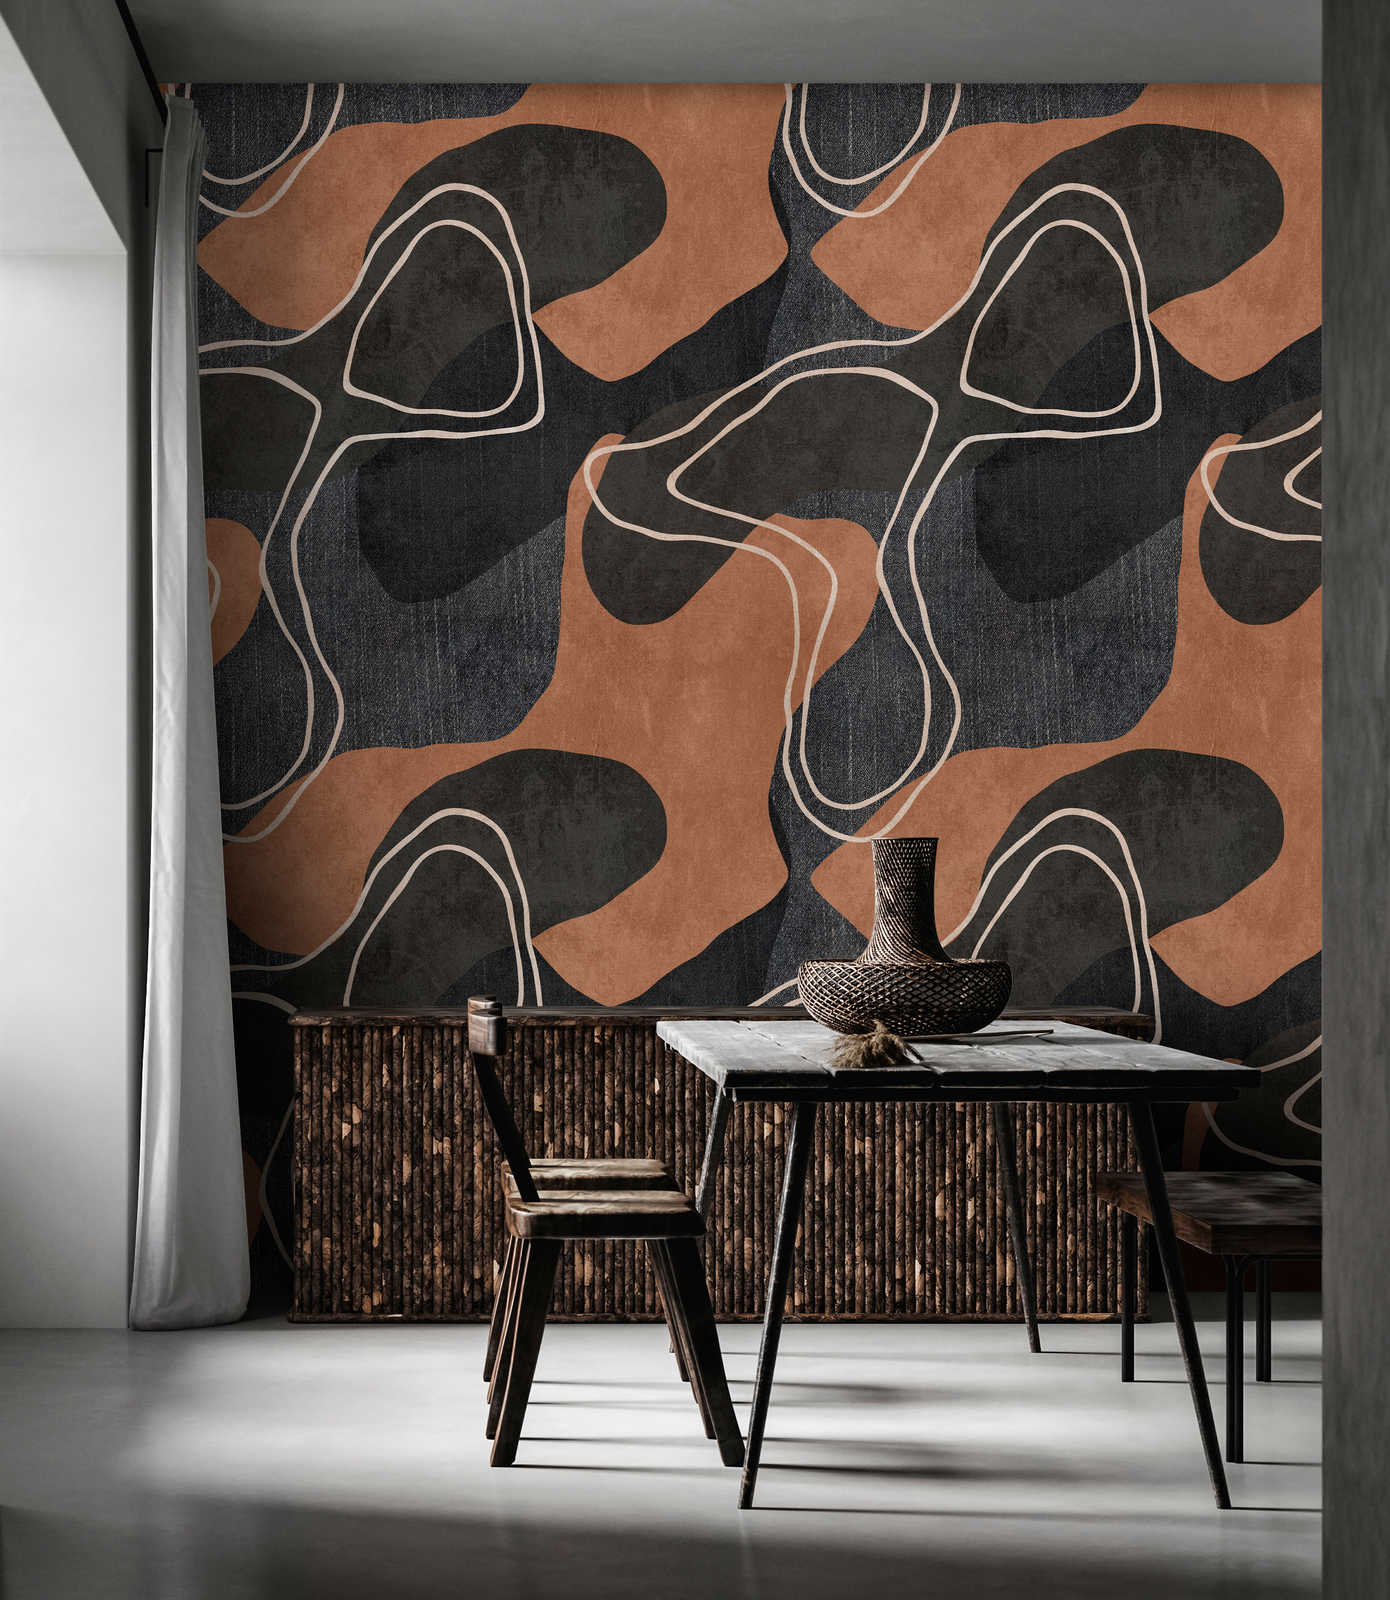             Terra 1 - Ethno behang met abstract design in aardetinten
        